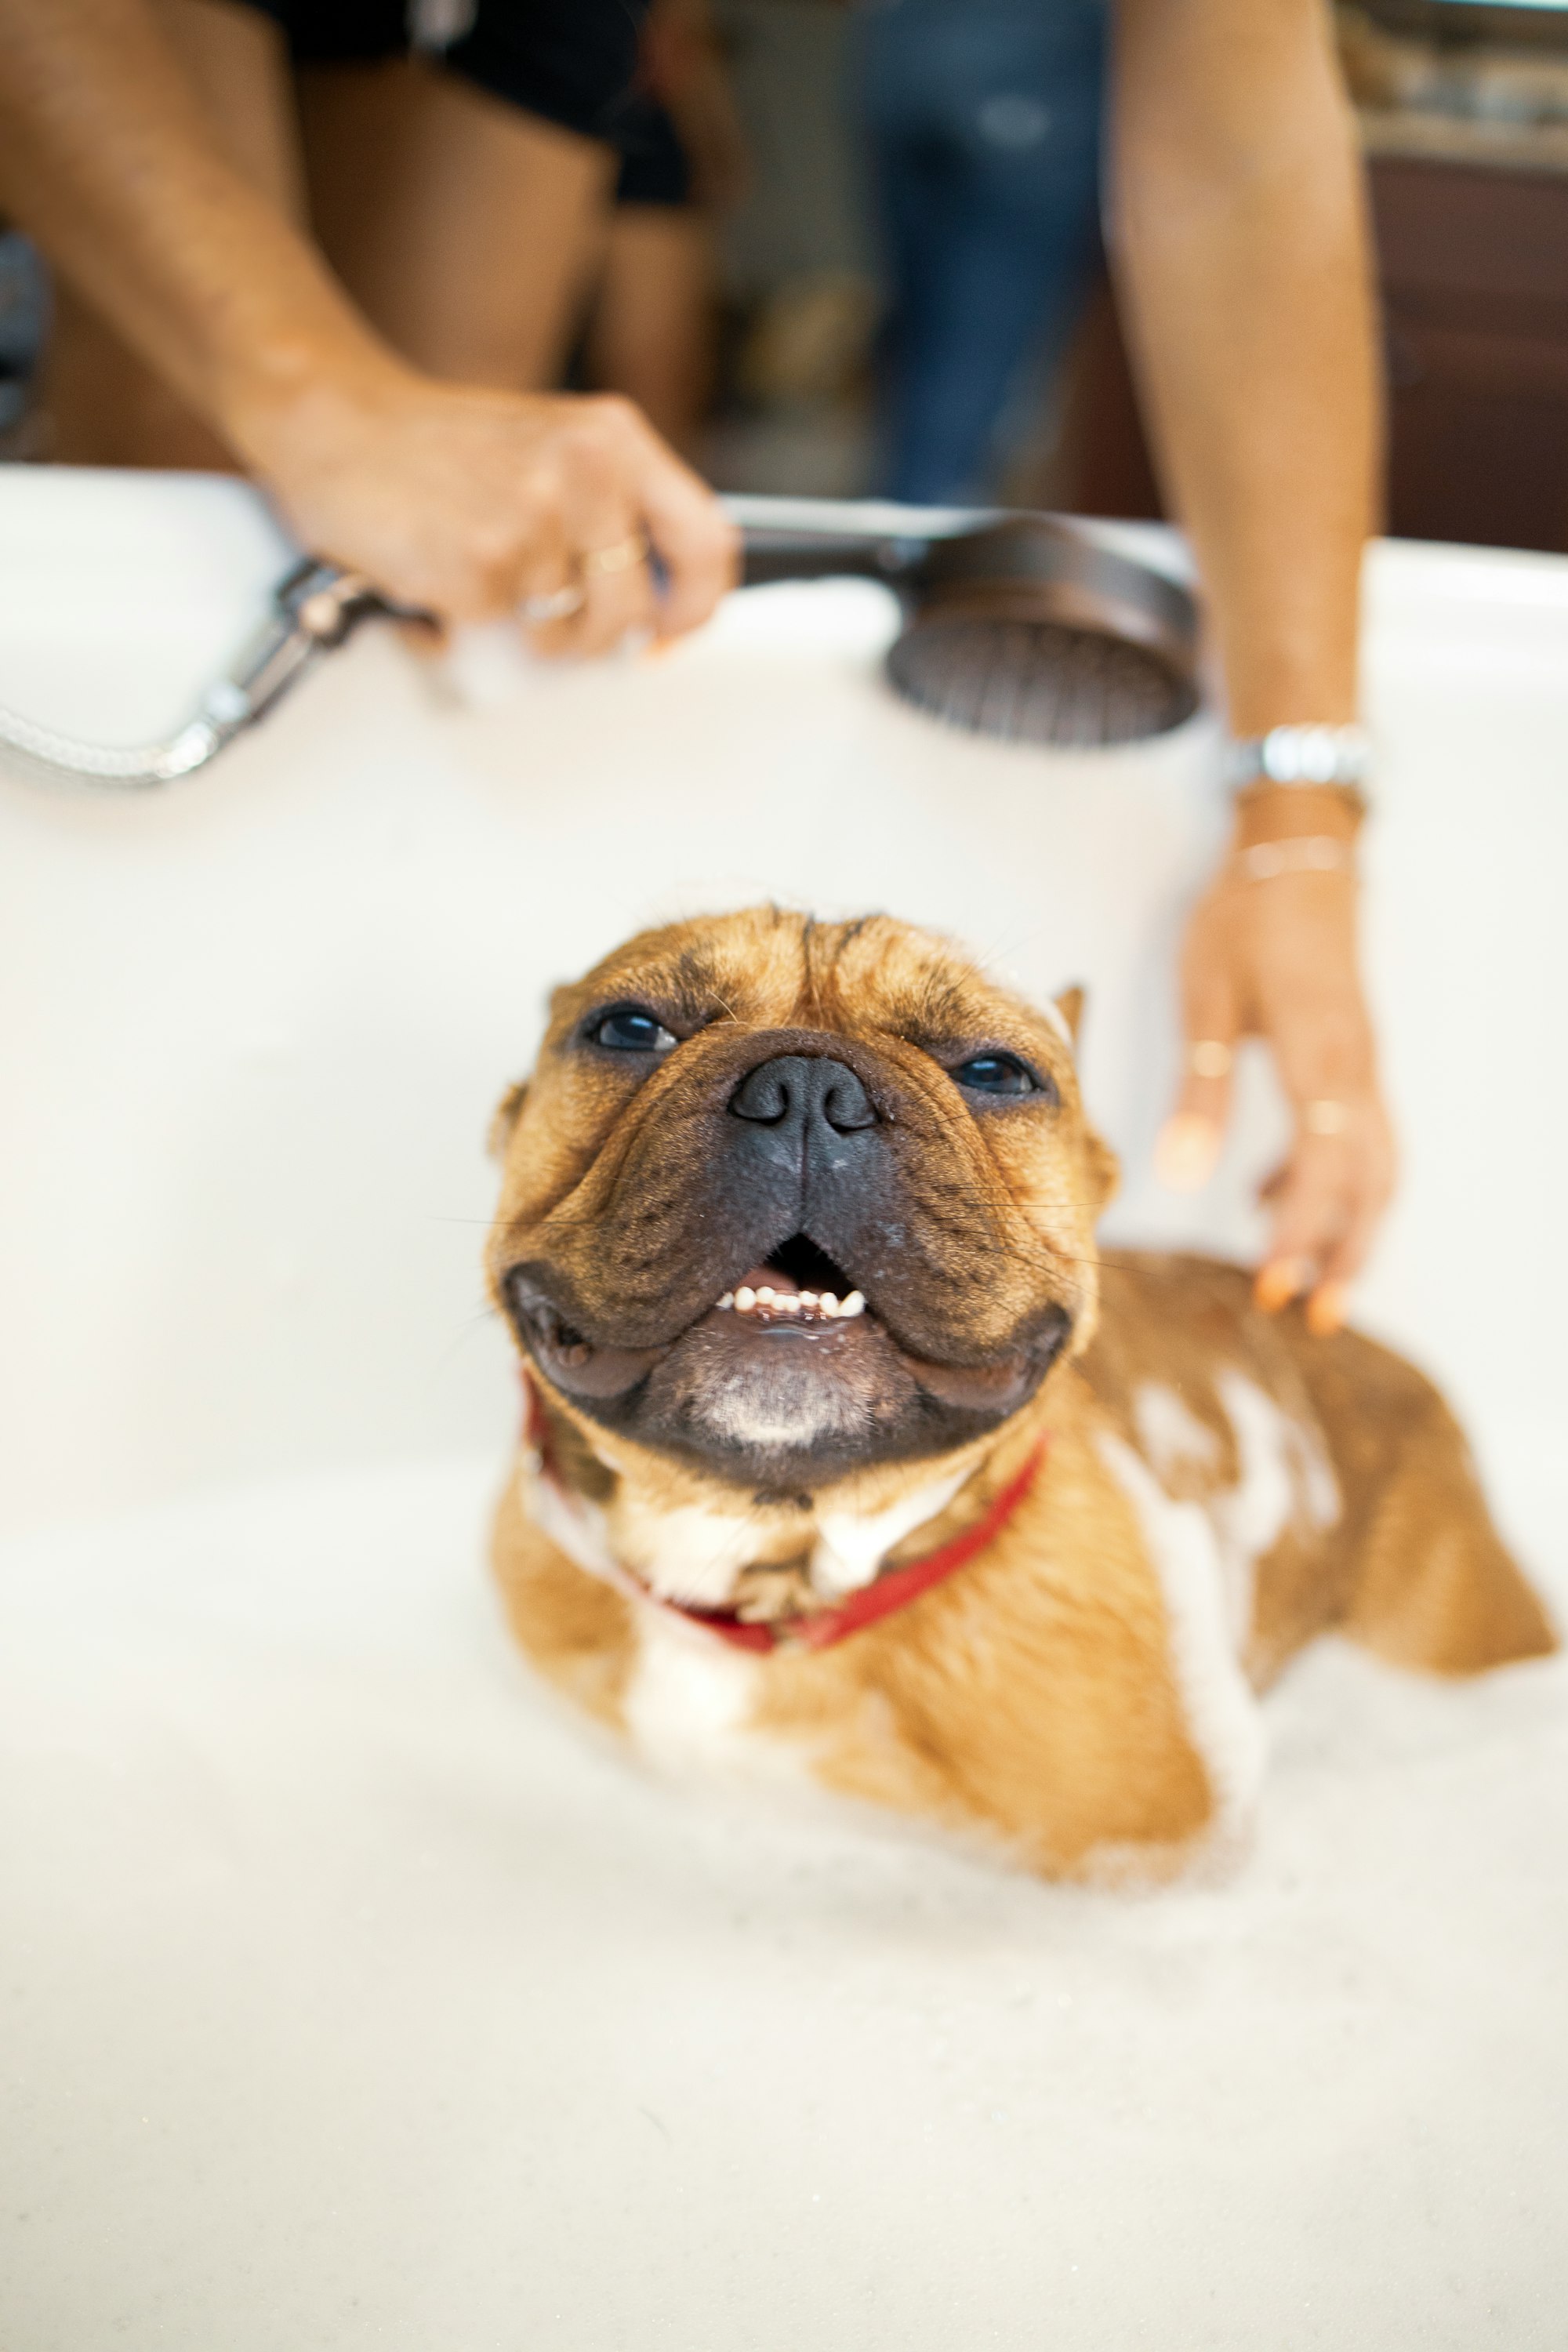 dog in a bath